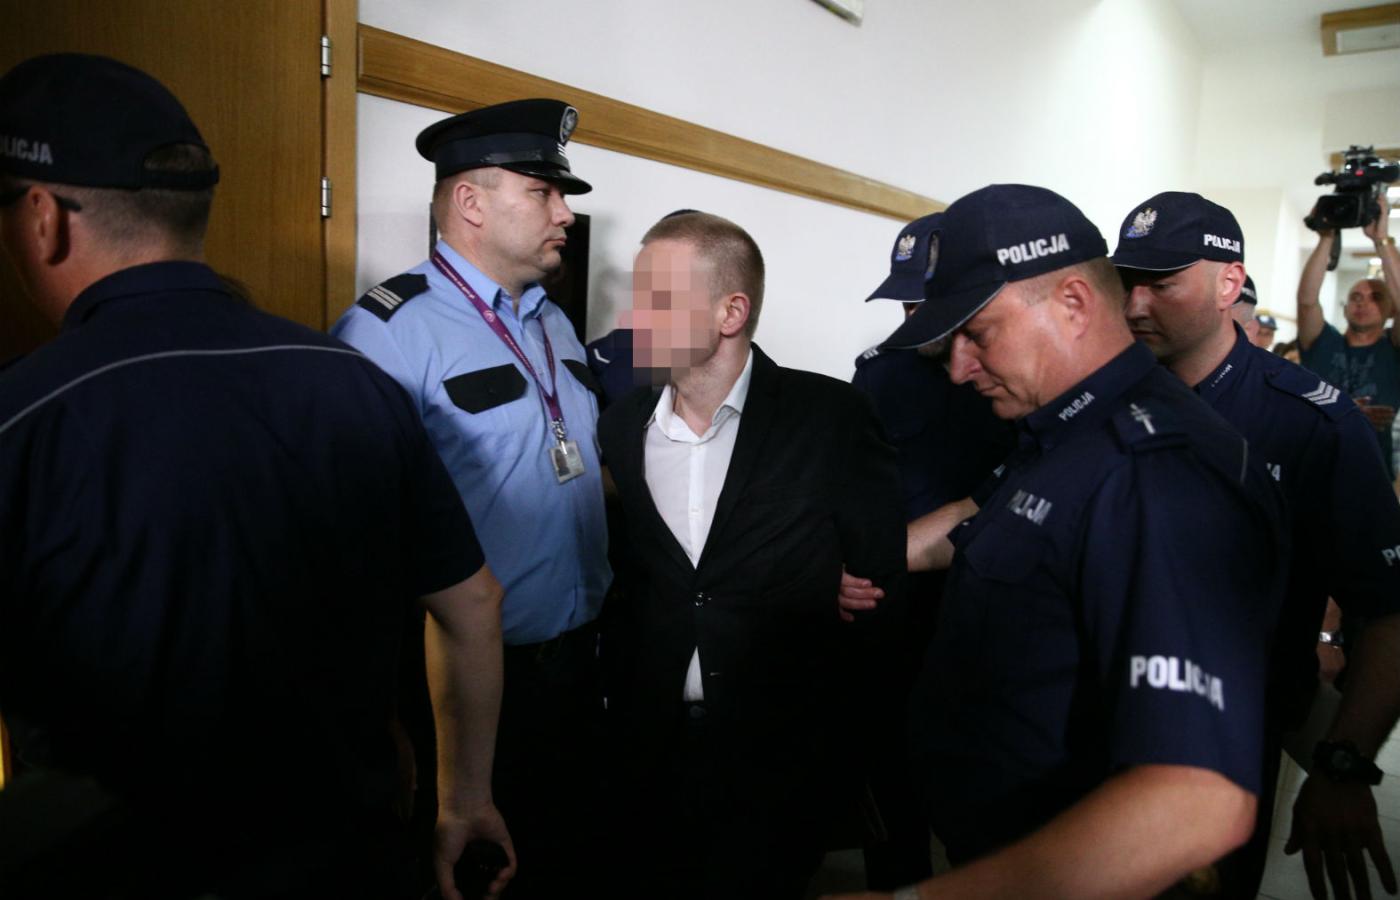 Przed komisją śledczą Marcin P. utrzymywał, że jest niewinny i że „Polakom do zwrócenia nie ma kompletnie nic”.